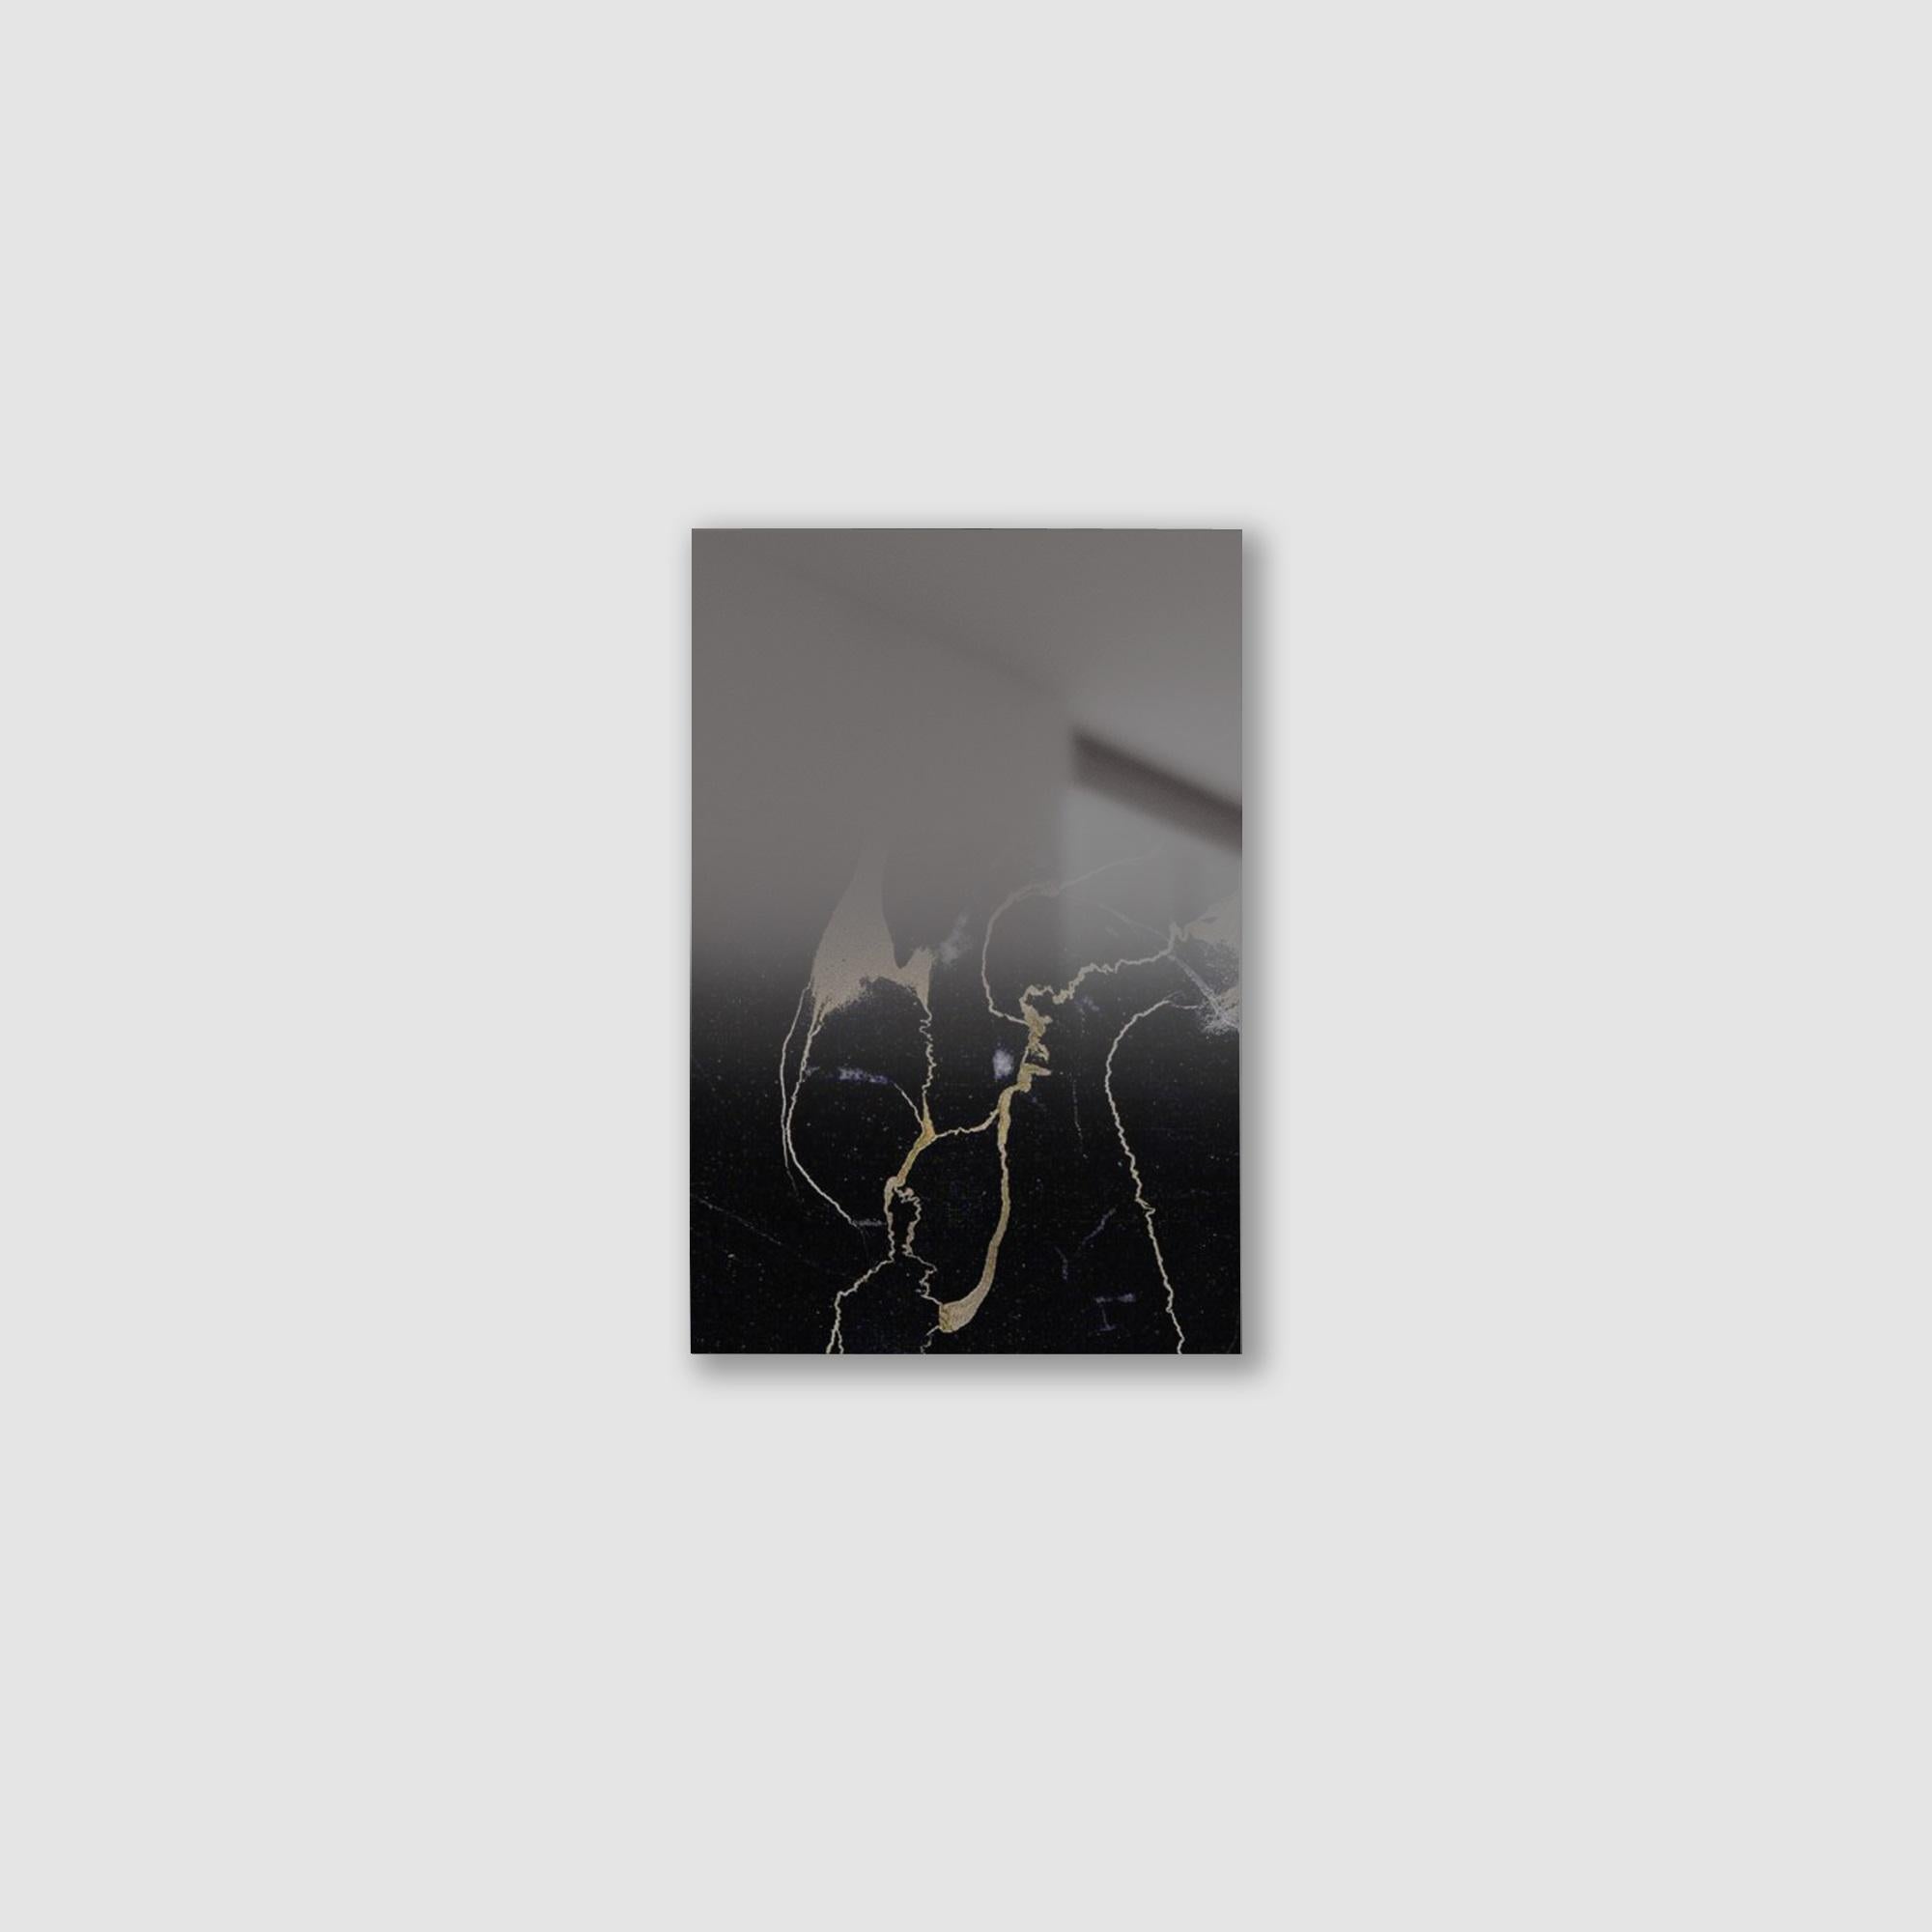 Miroir Zero XS Noir par Formaminima
Édition limitée à 200 pièces. 
Dimensions : D 0,5 x L 21,5 x H 29 cm. 
MATERIAL : Structure en tôle avec supports métalliques encastrés, marbre massif extra-plat veiné d'or Black Portoro, verre de cristal à